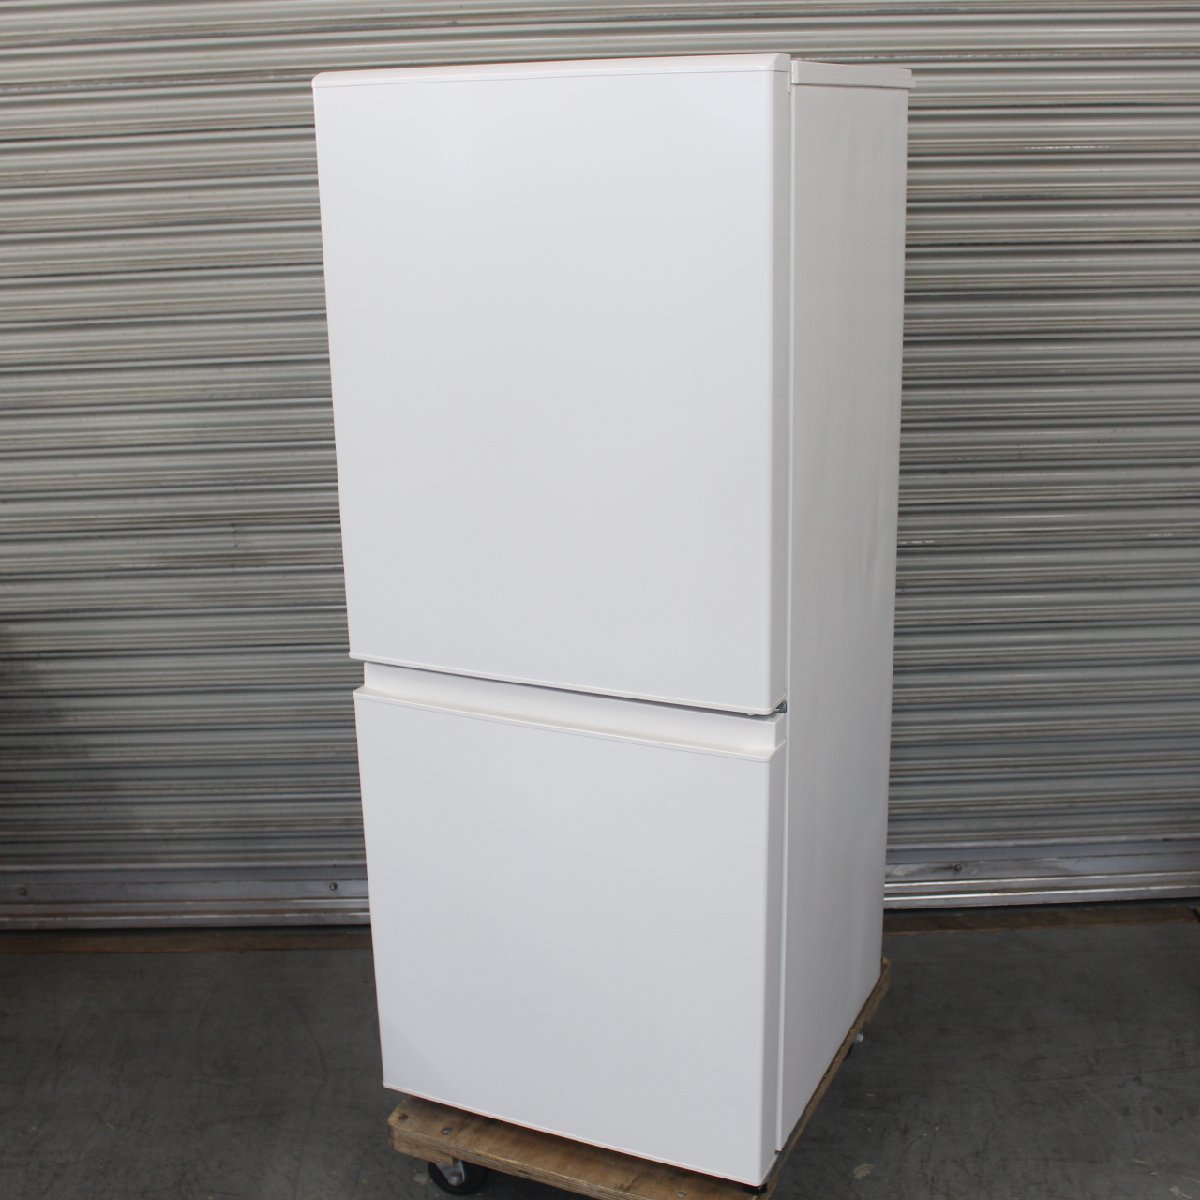 東京都中野区にて 無印 冷蔵庫 MJ‐R13B 2021年製 を出張買取させて頂きました。